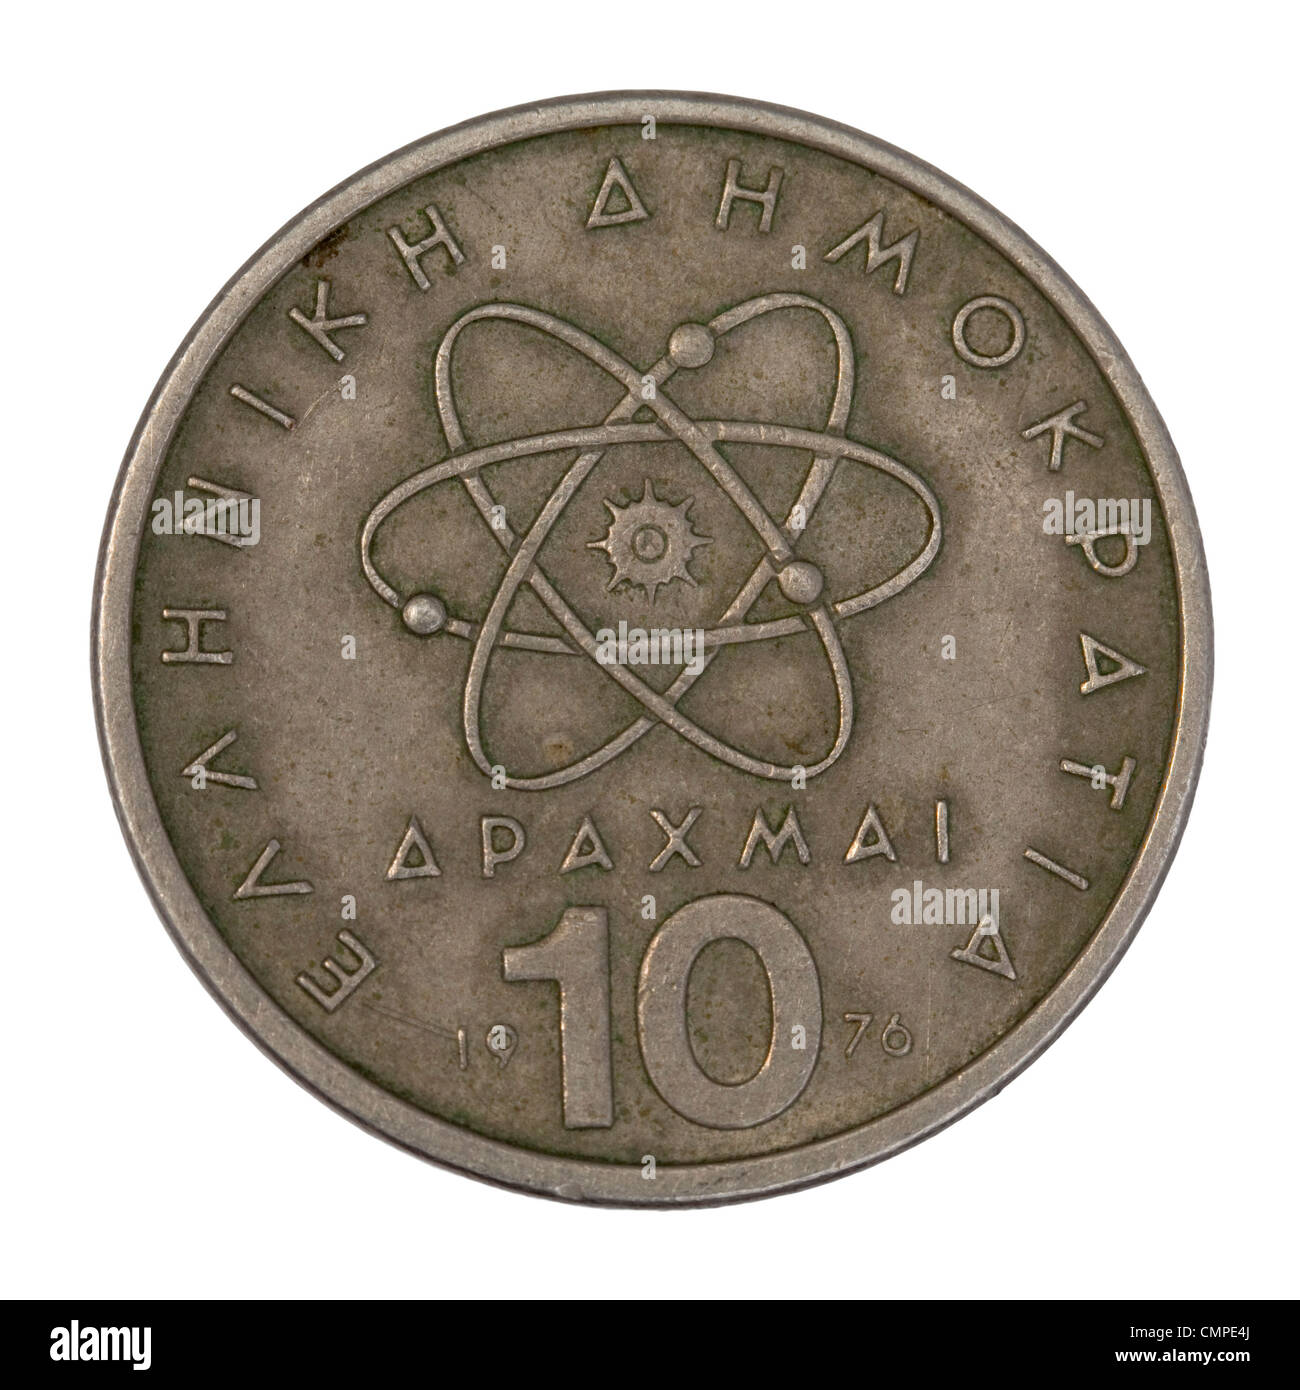 wissenschaftliches Modell oder ein Symbol des Atoms schematisch dargestellt auf alte griechische Münze in Umlauf 10 Drachme von 1976 Stockfoto